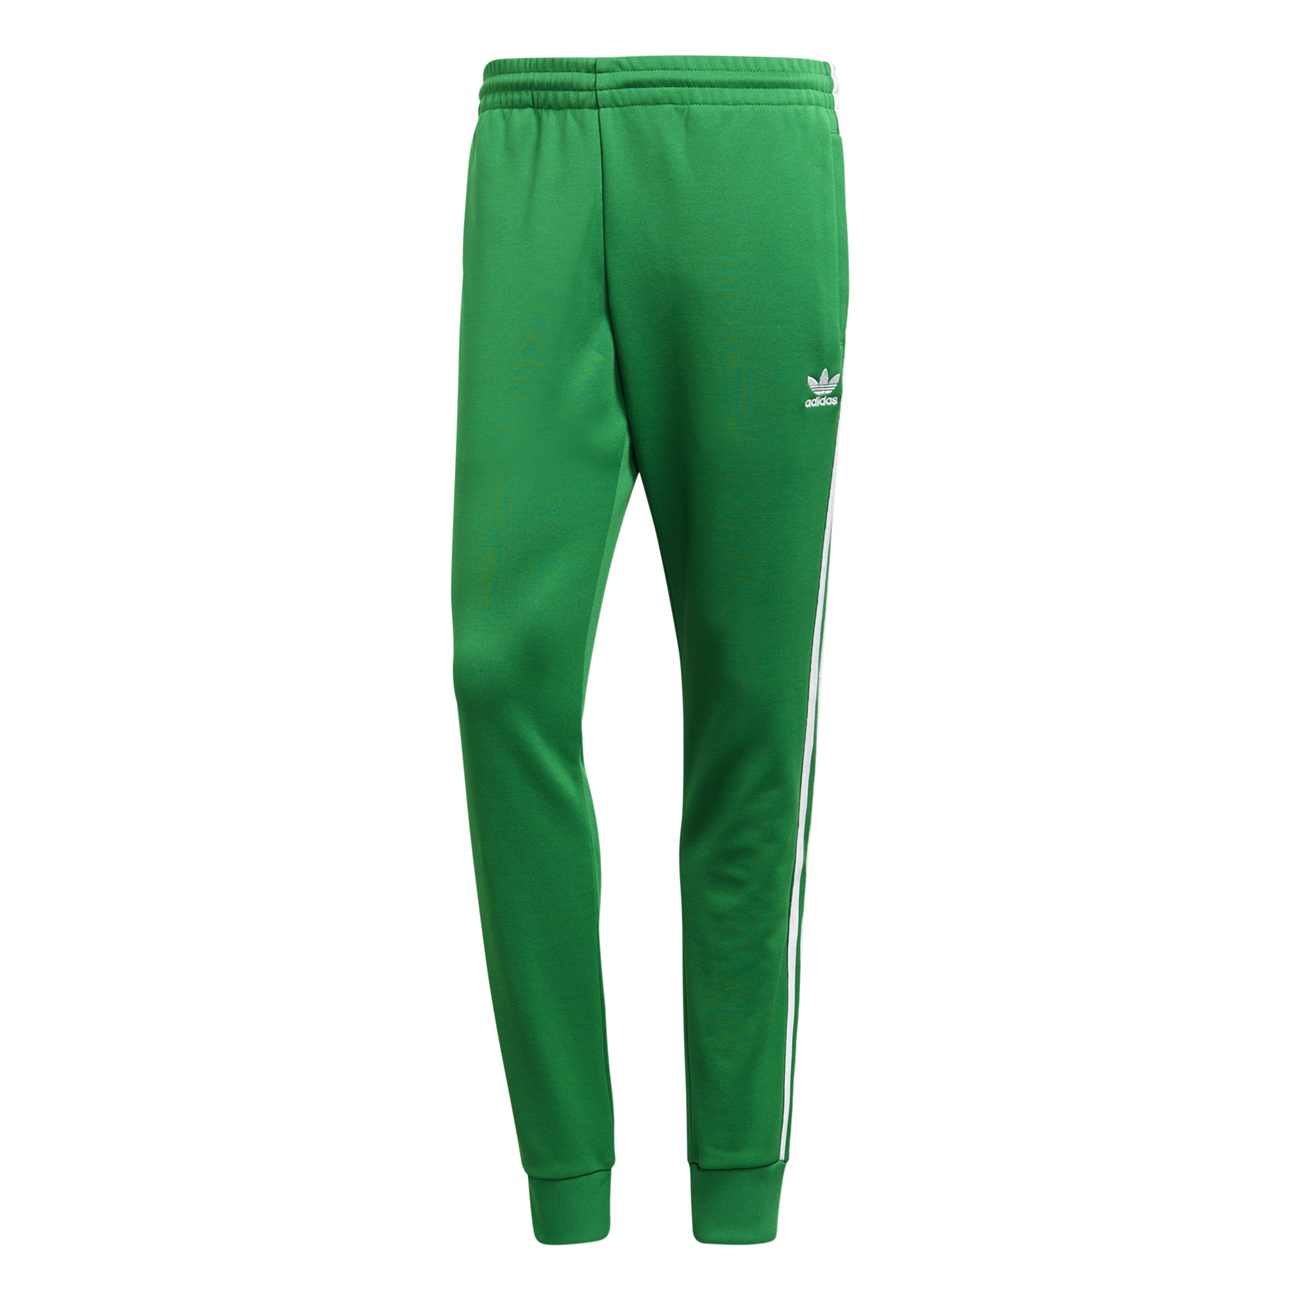 adidas originals pants green